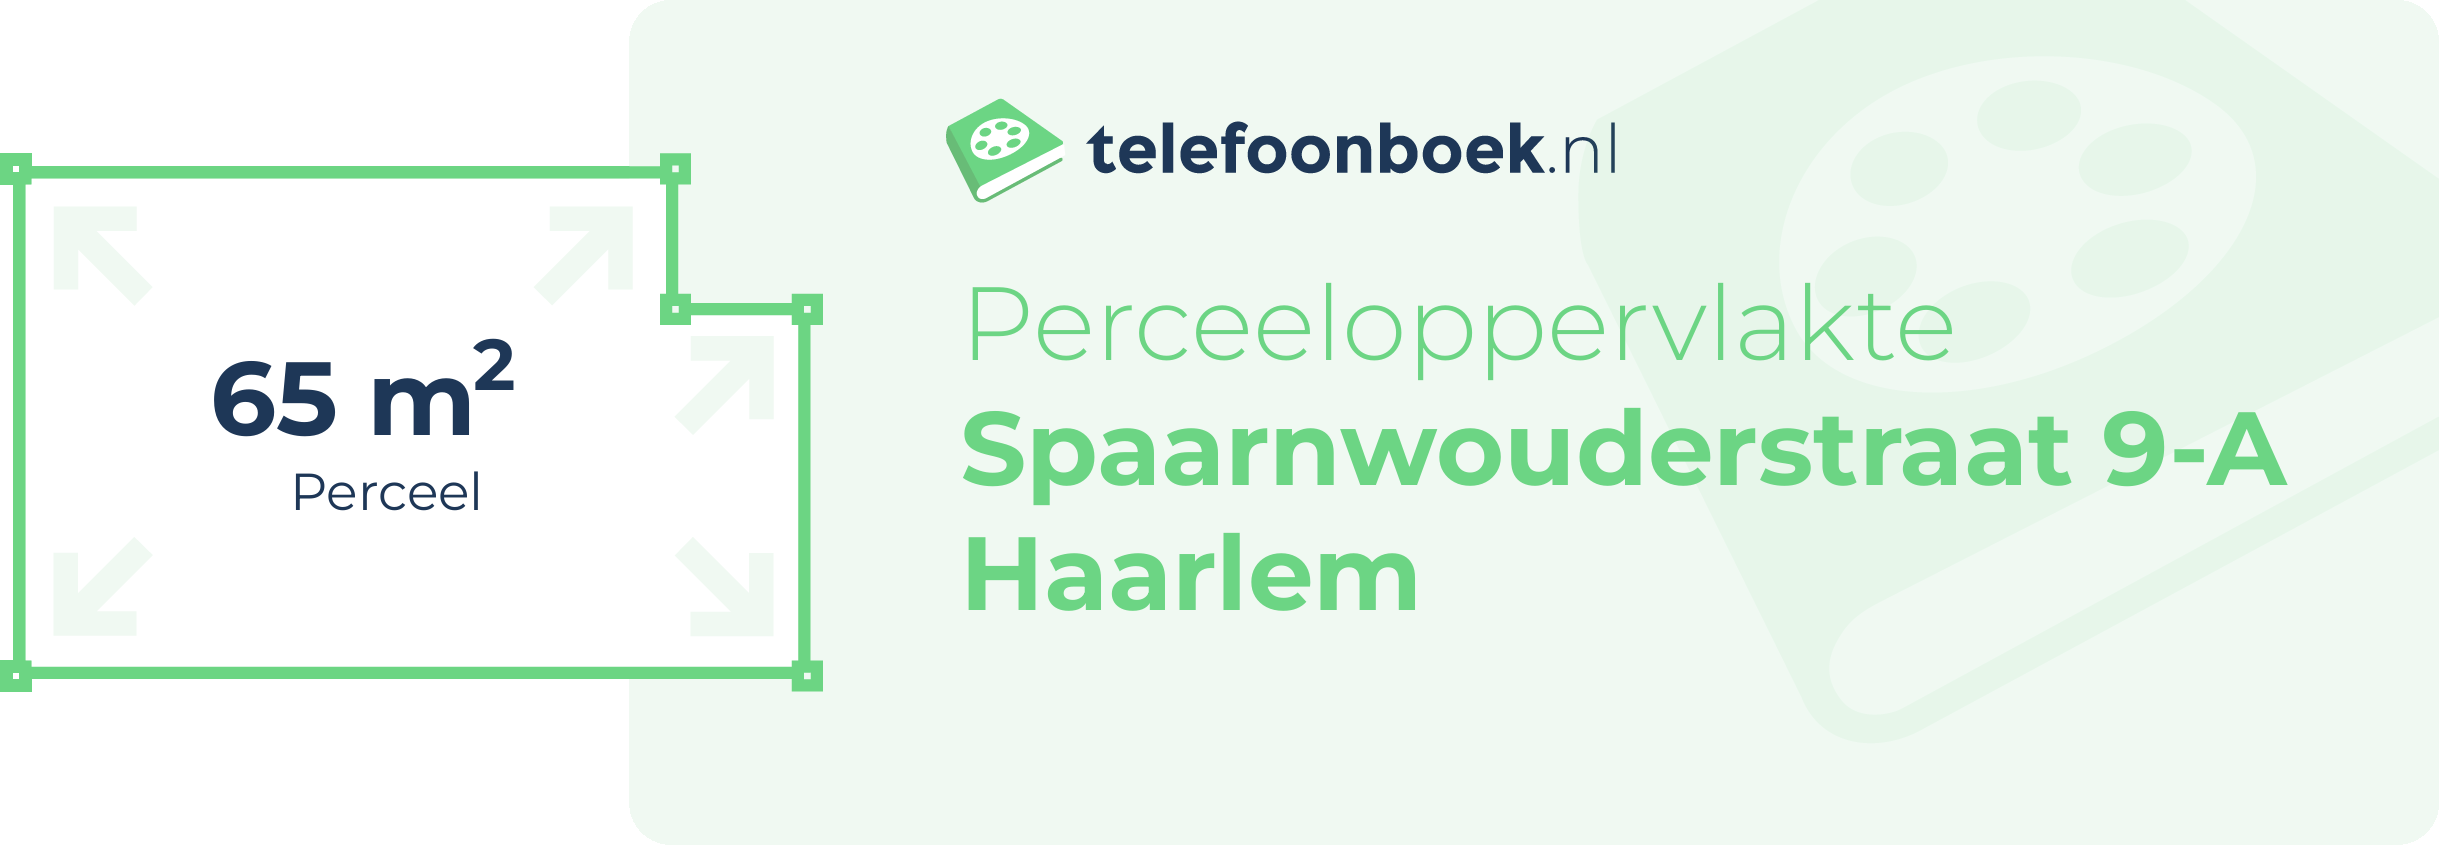 Perceeloppervlakte Spaarnwouderstraat 9-A Haarlem